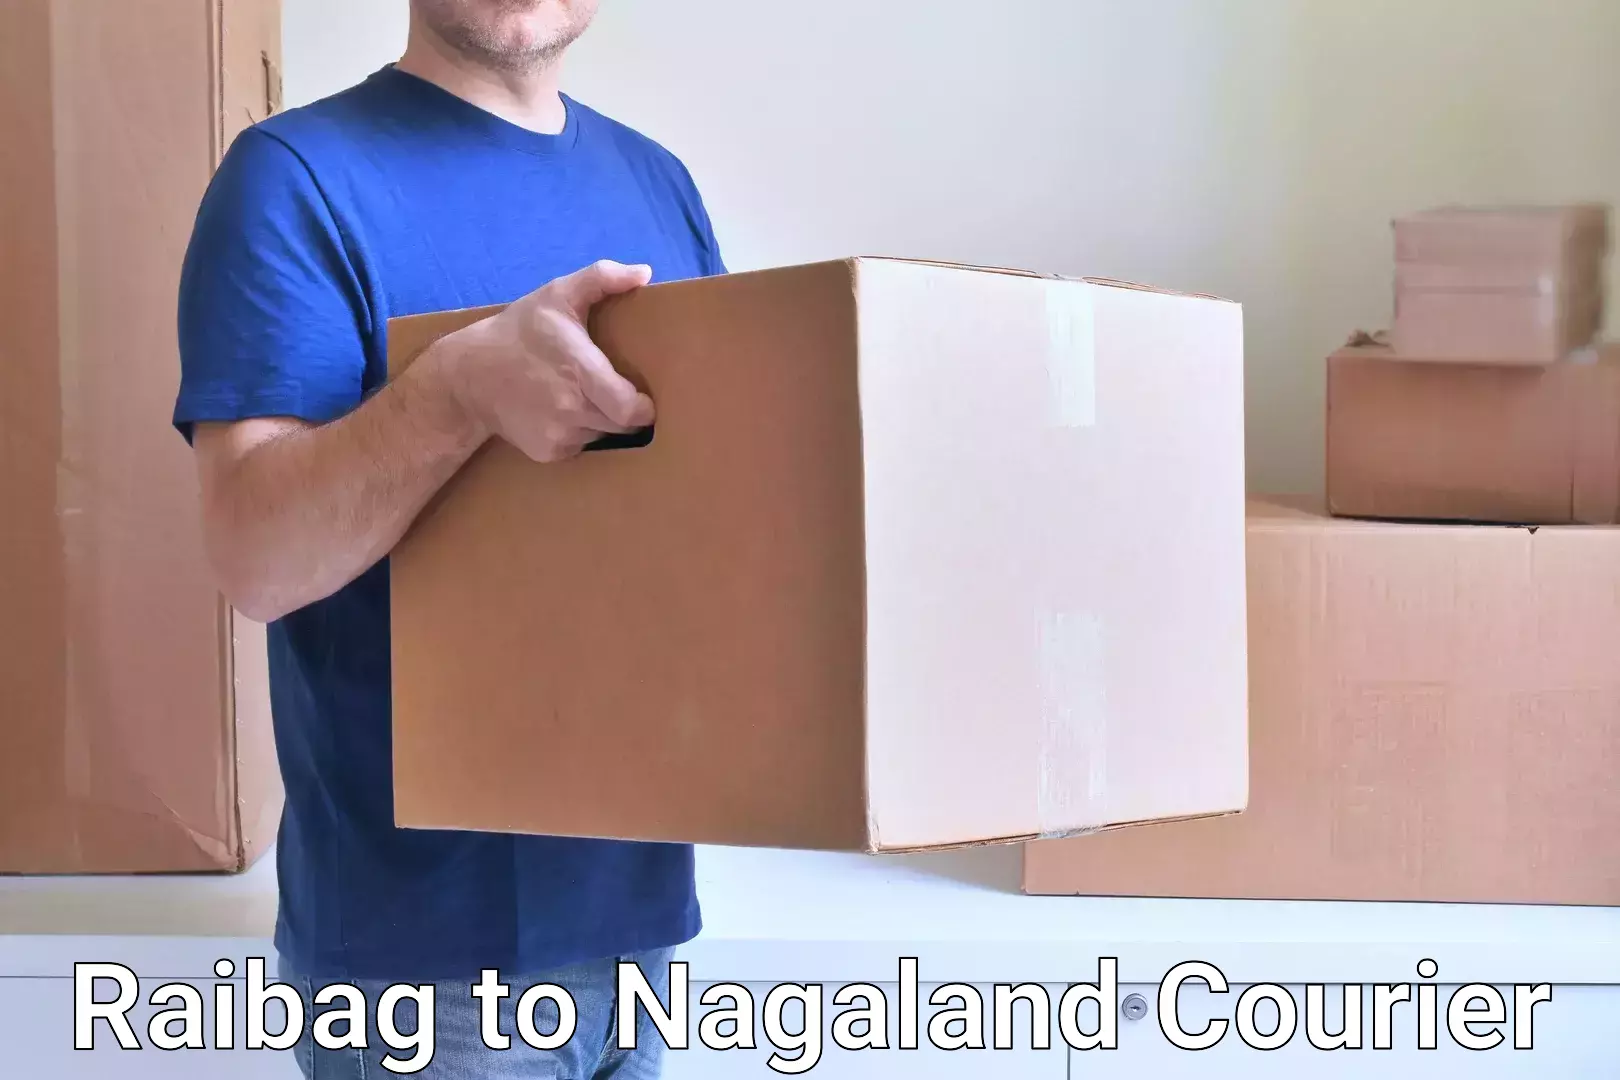 On-demand shipping options Raibag to Nagaland